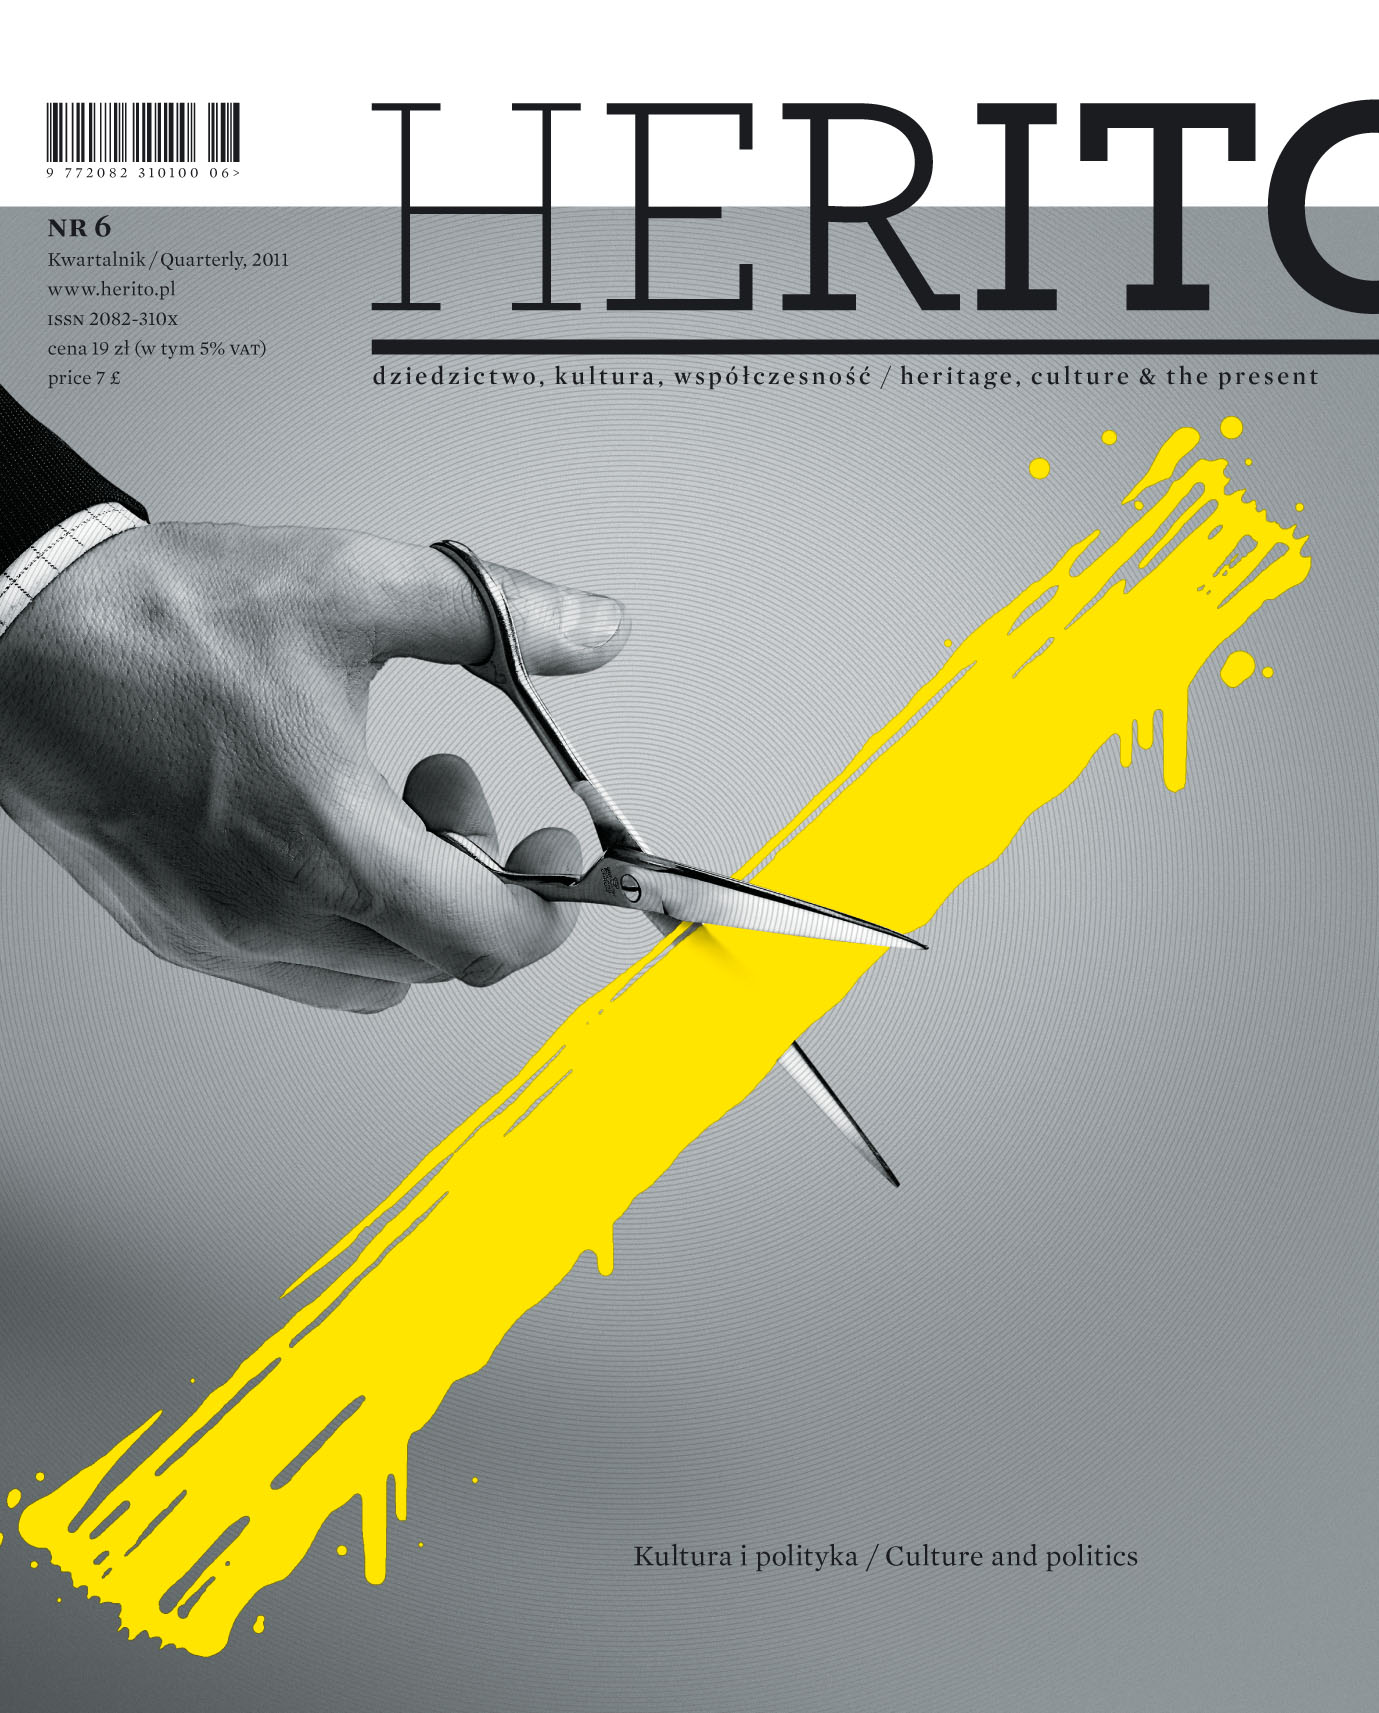 Okładka 6. numeru kwartalnika „Herito” (źródło: materiały prasowe)